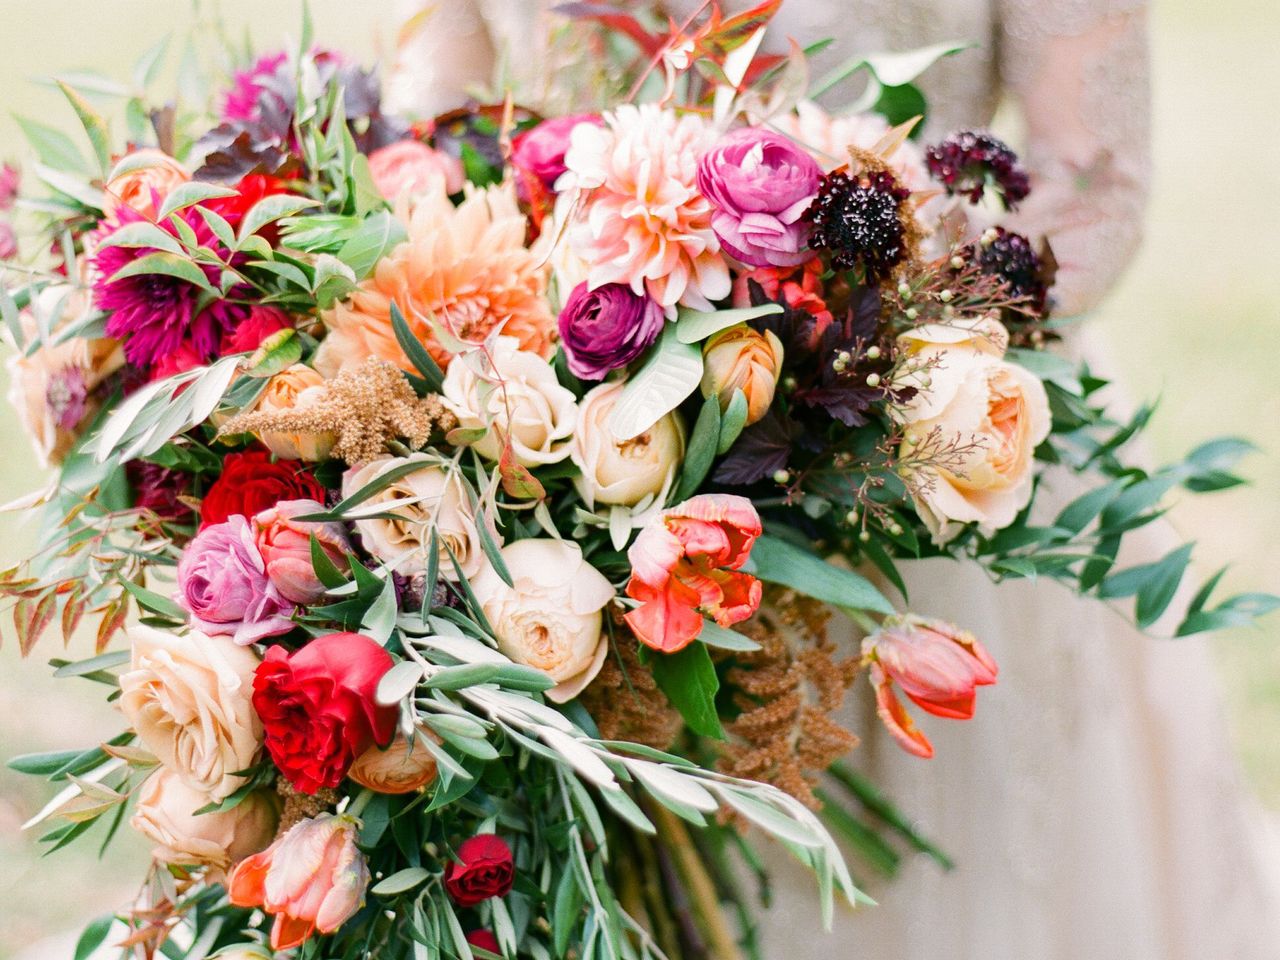 Официальное руководство толкования цветов в свадебных букетах (2-я часть)